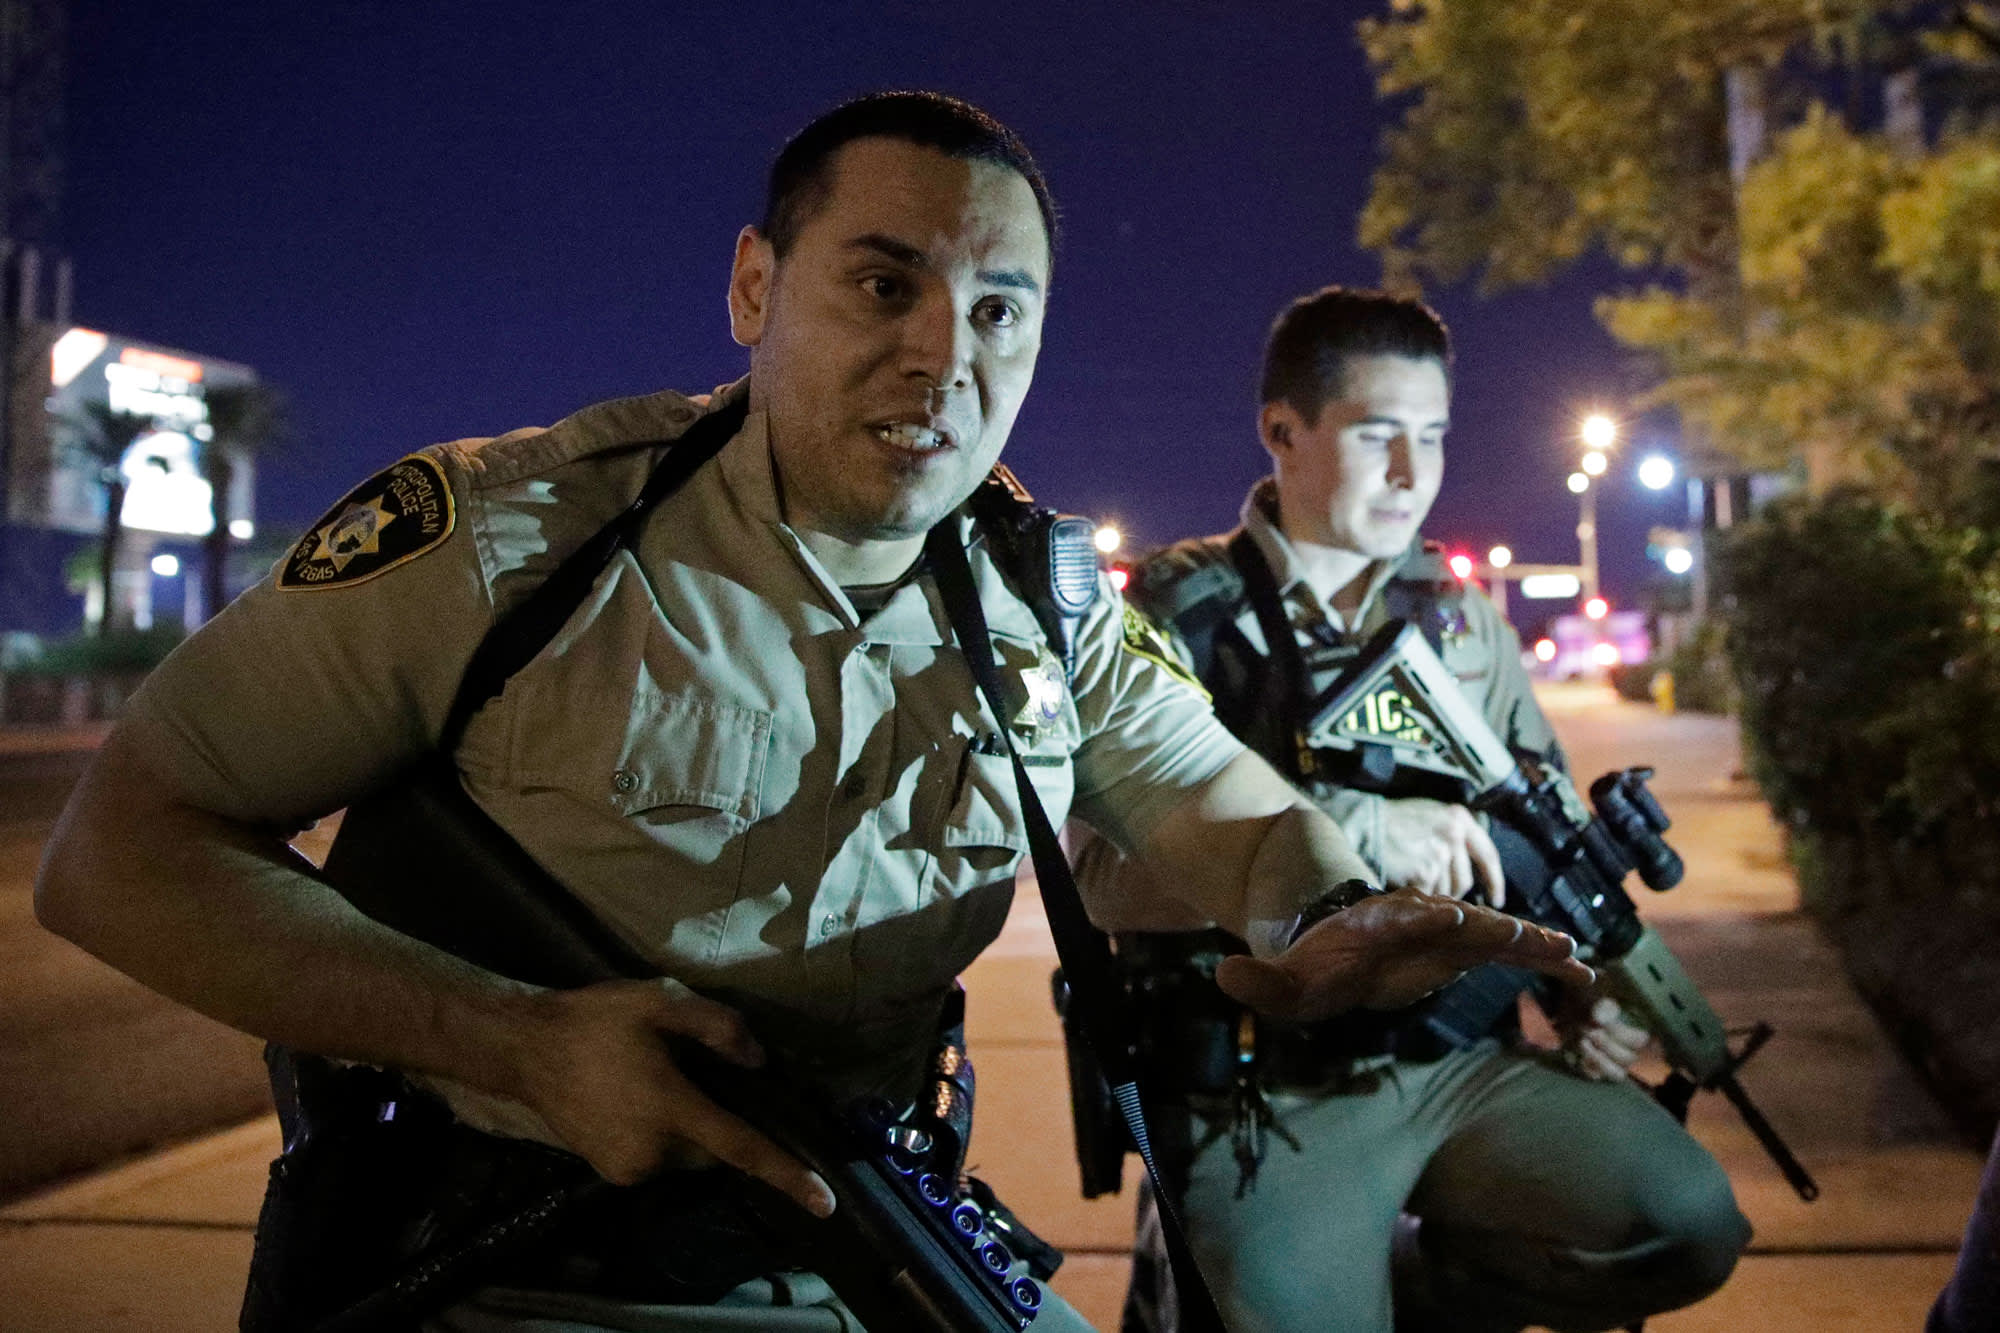 Deadliest shooting in modern US history leaves at 59 dead, 500+ injured in Las